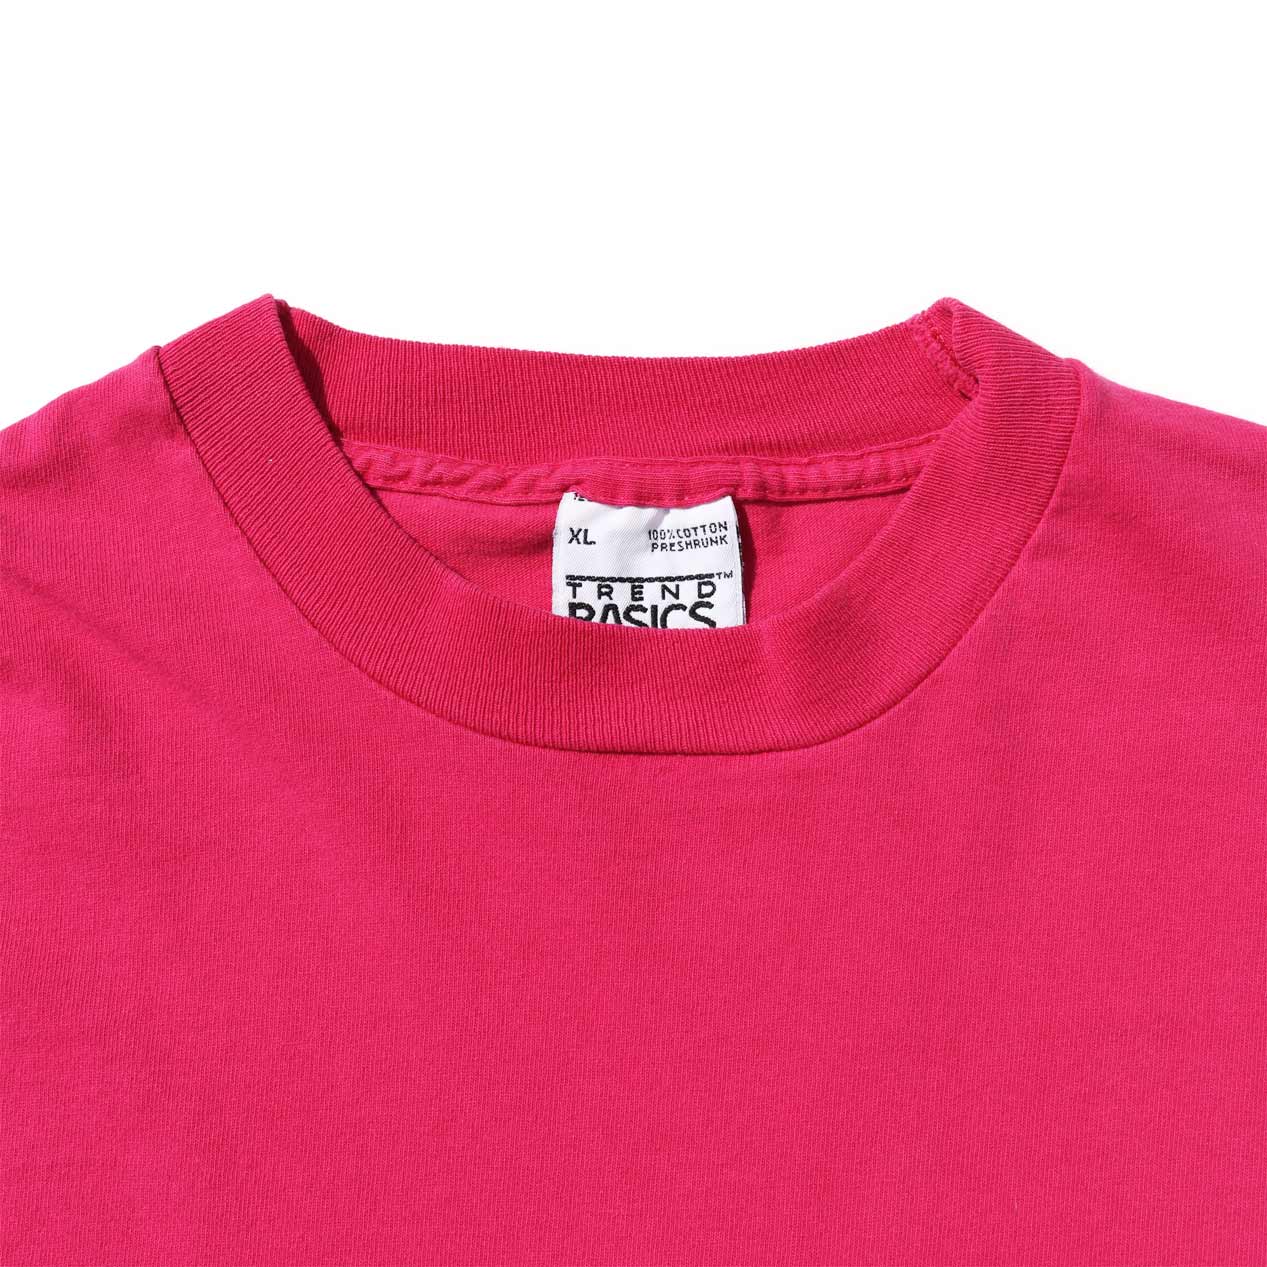 POST JUNK / 90's TREND BASICS USA製 ピンク ポケットTシャツ [XL]